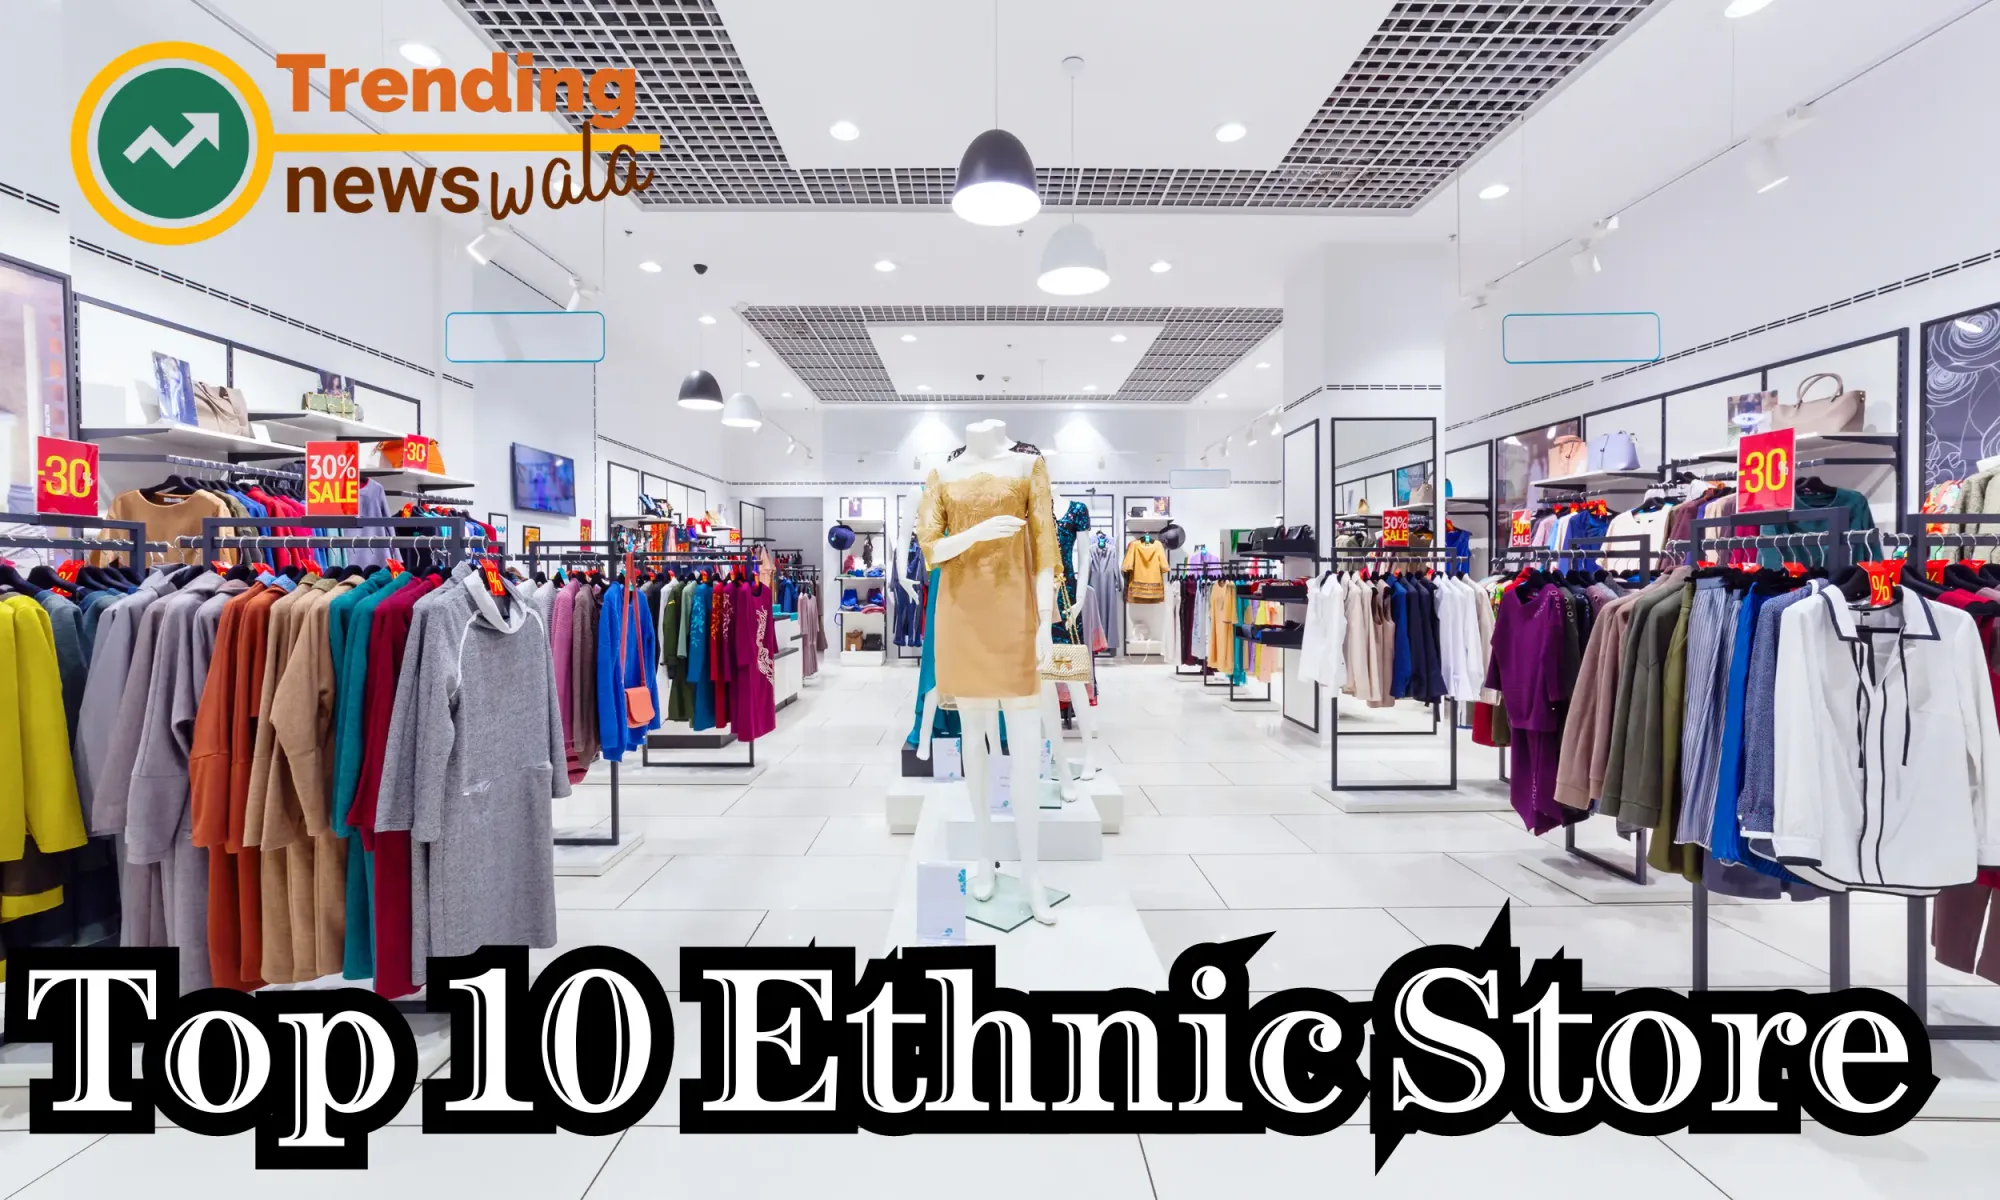 Top 10 Online Ethnic Store